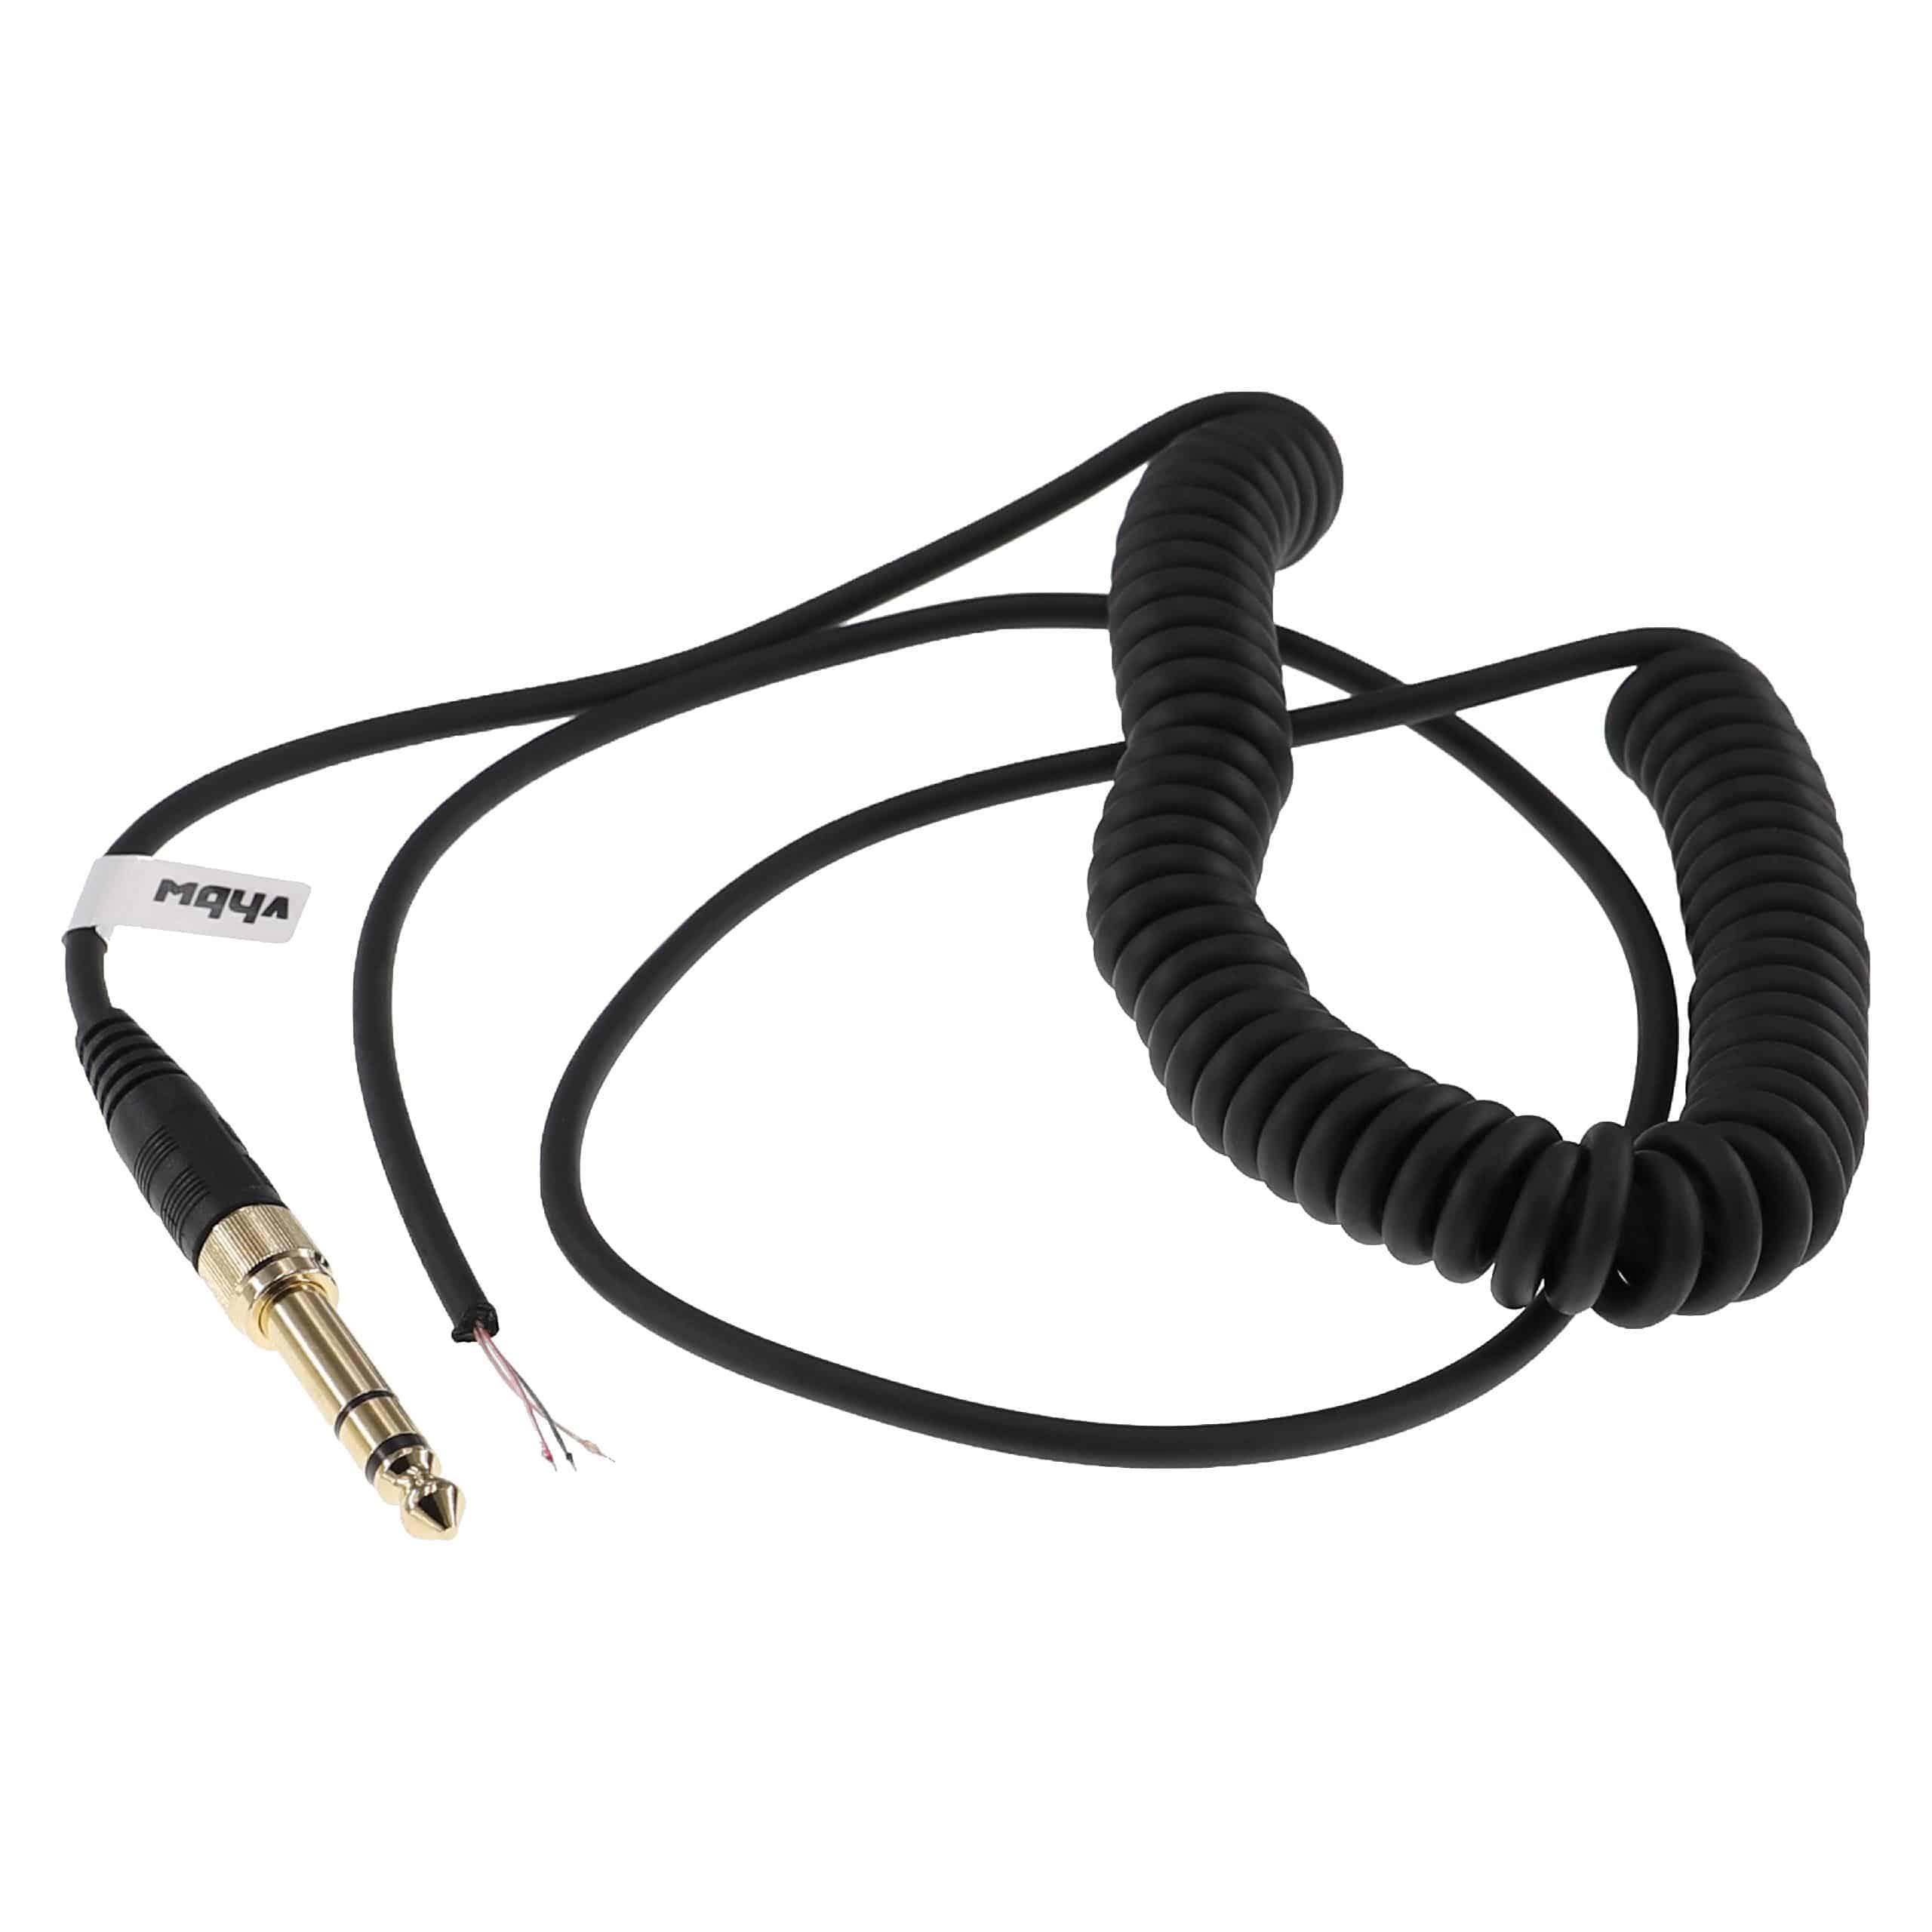 Cable audio AUX a conector jack de 3,5 mm, de 6,3 mm para auriculares Beyerdynamic DT 770, DT 770 Pro, DT 990,